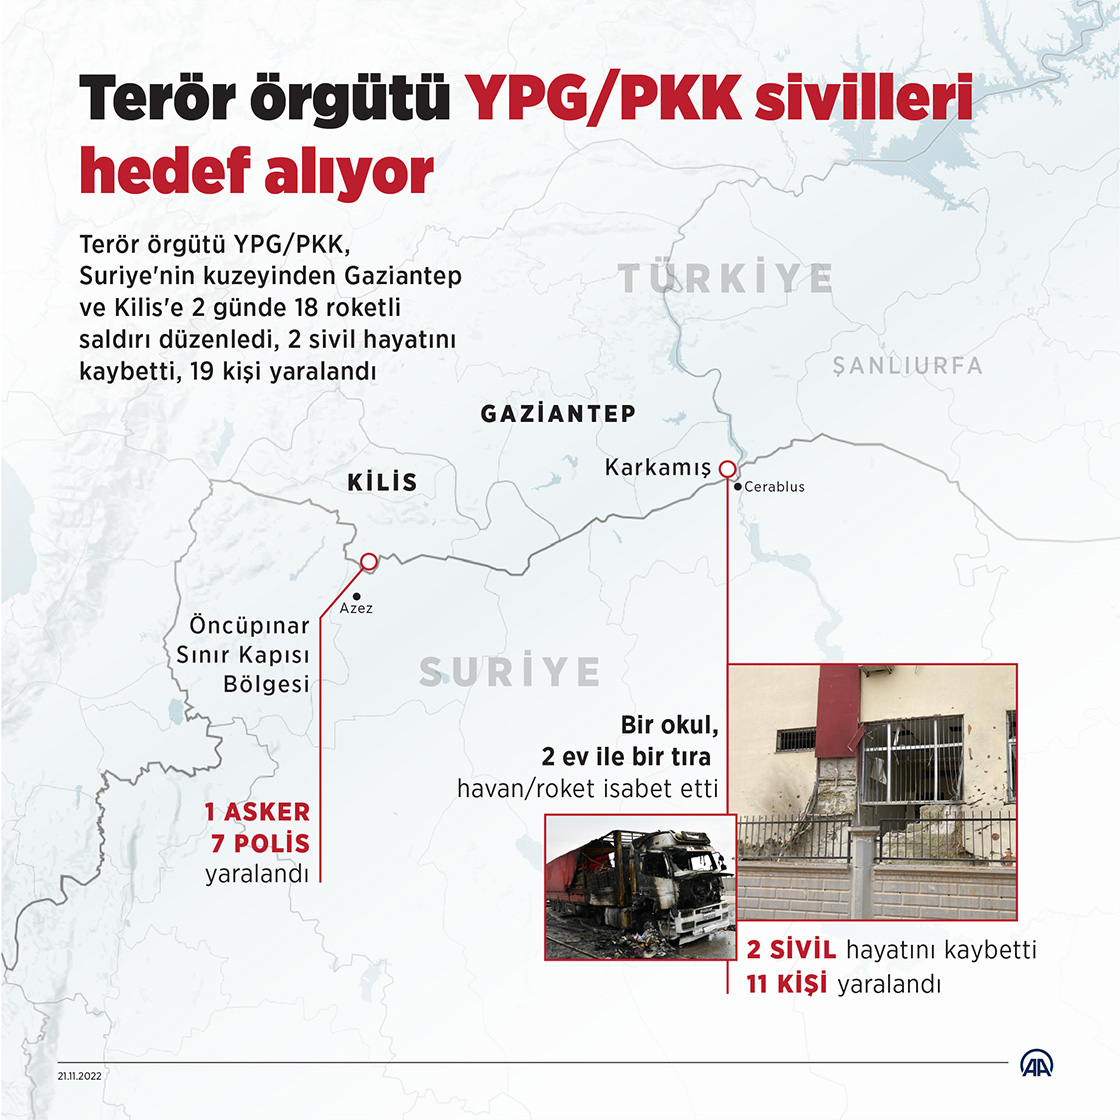 Terör örgütü YPG/PKK sivilleri hedef alıyor